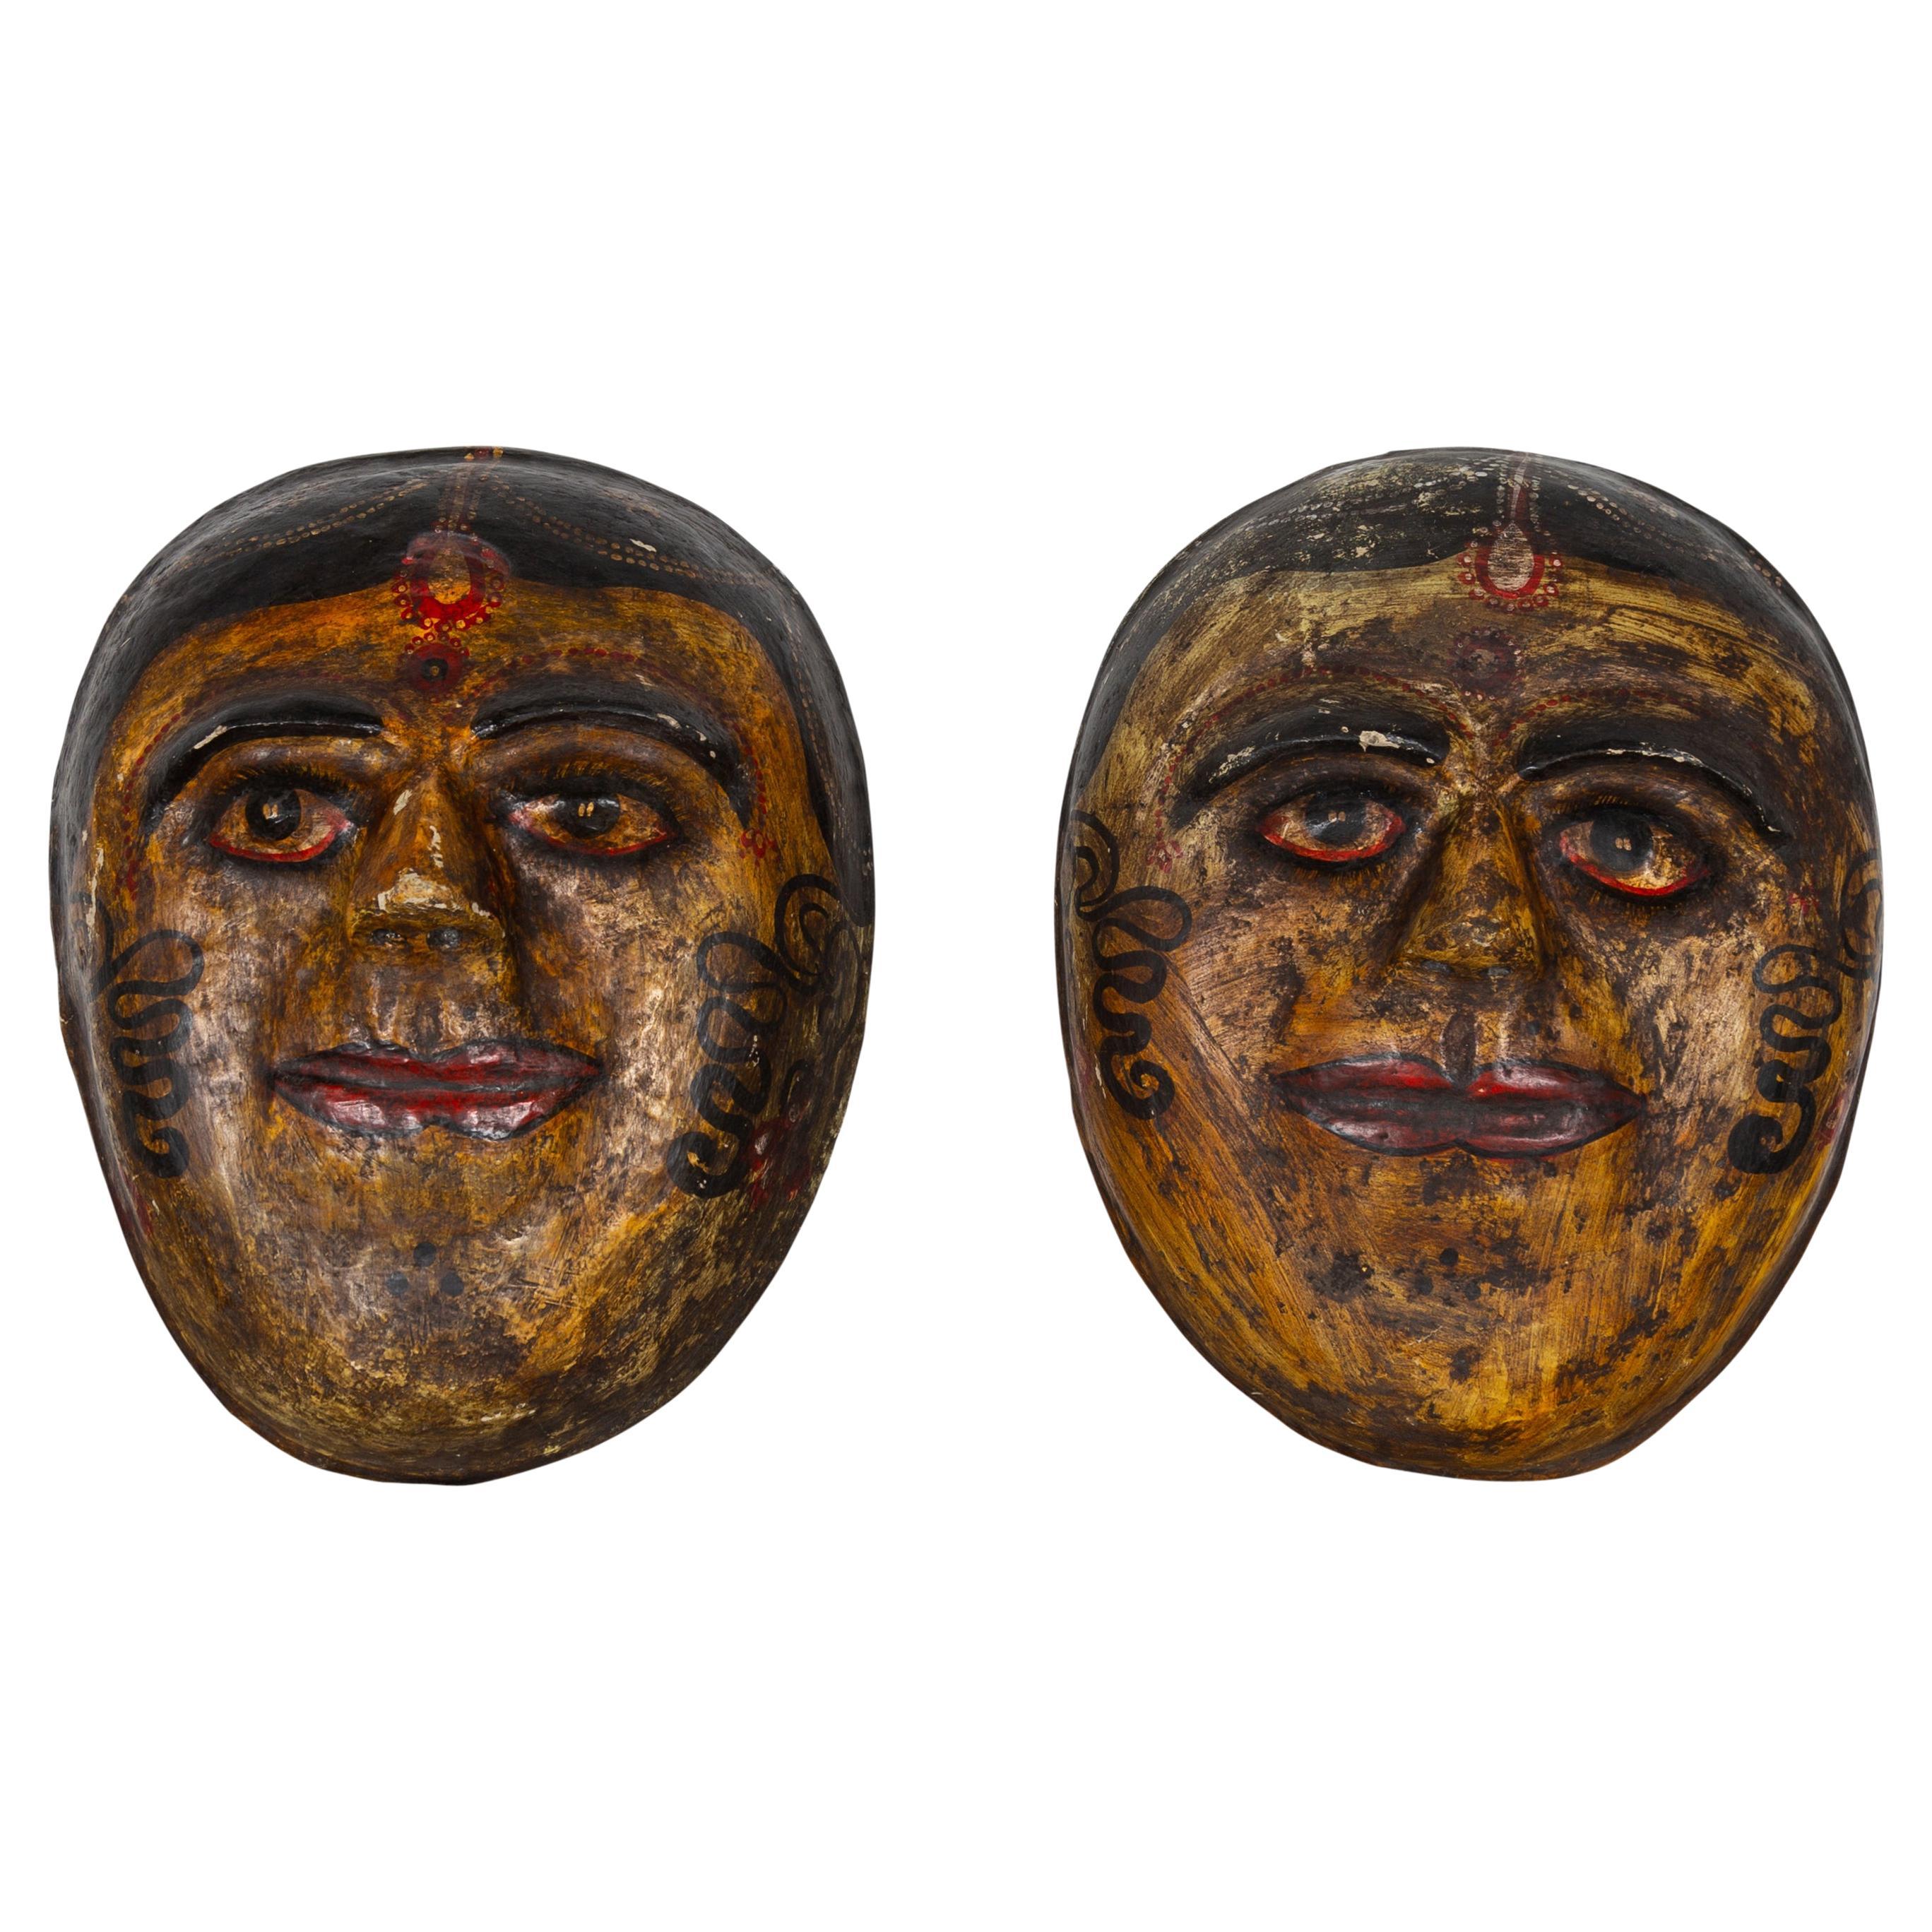 Two Antique Indian Papier-Mâché Hand Painted Face Masks Depicting Brides For Sale